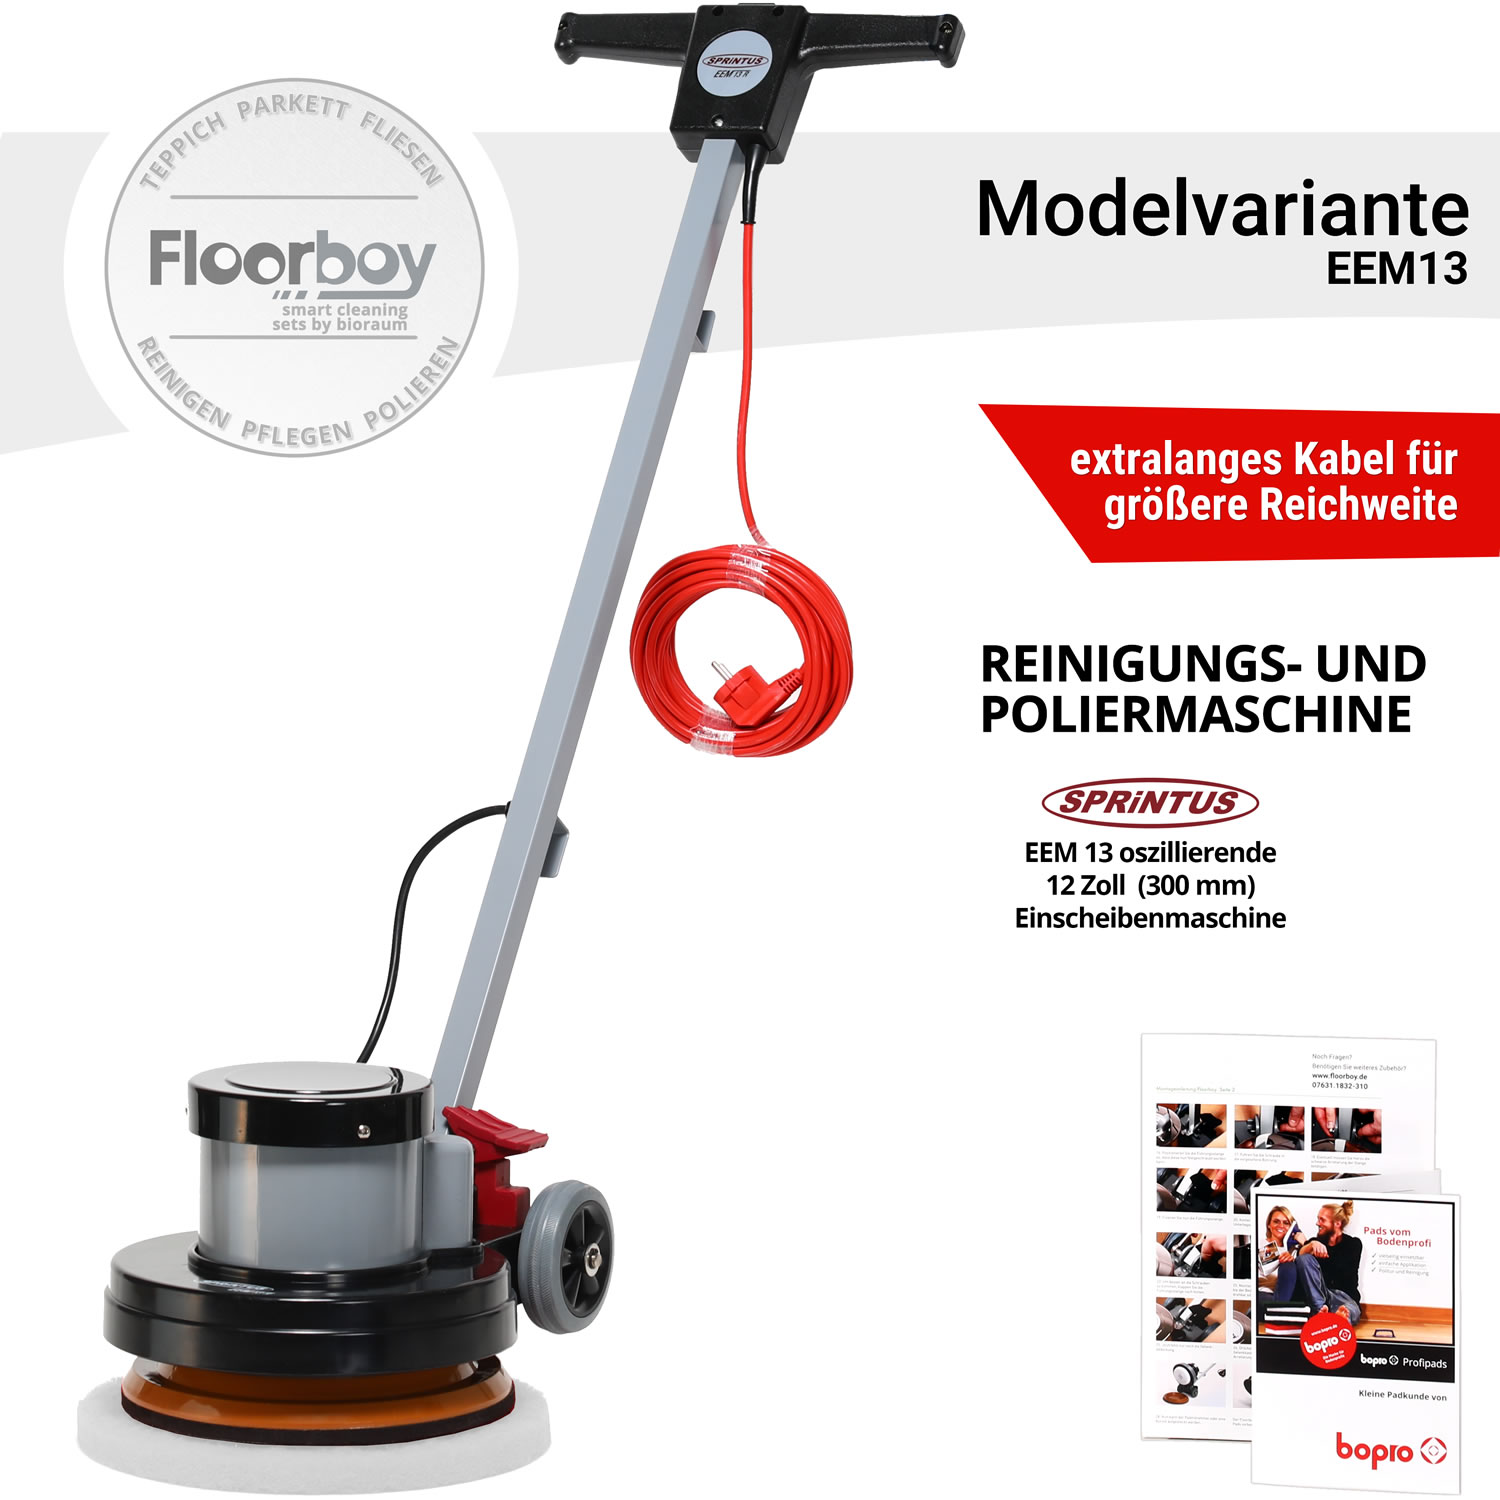 Floorboy EEM13 Poliermaschine mit Treibteller